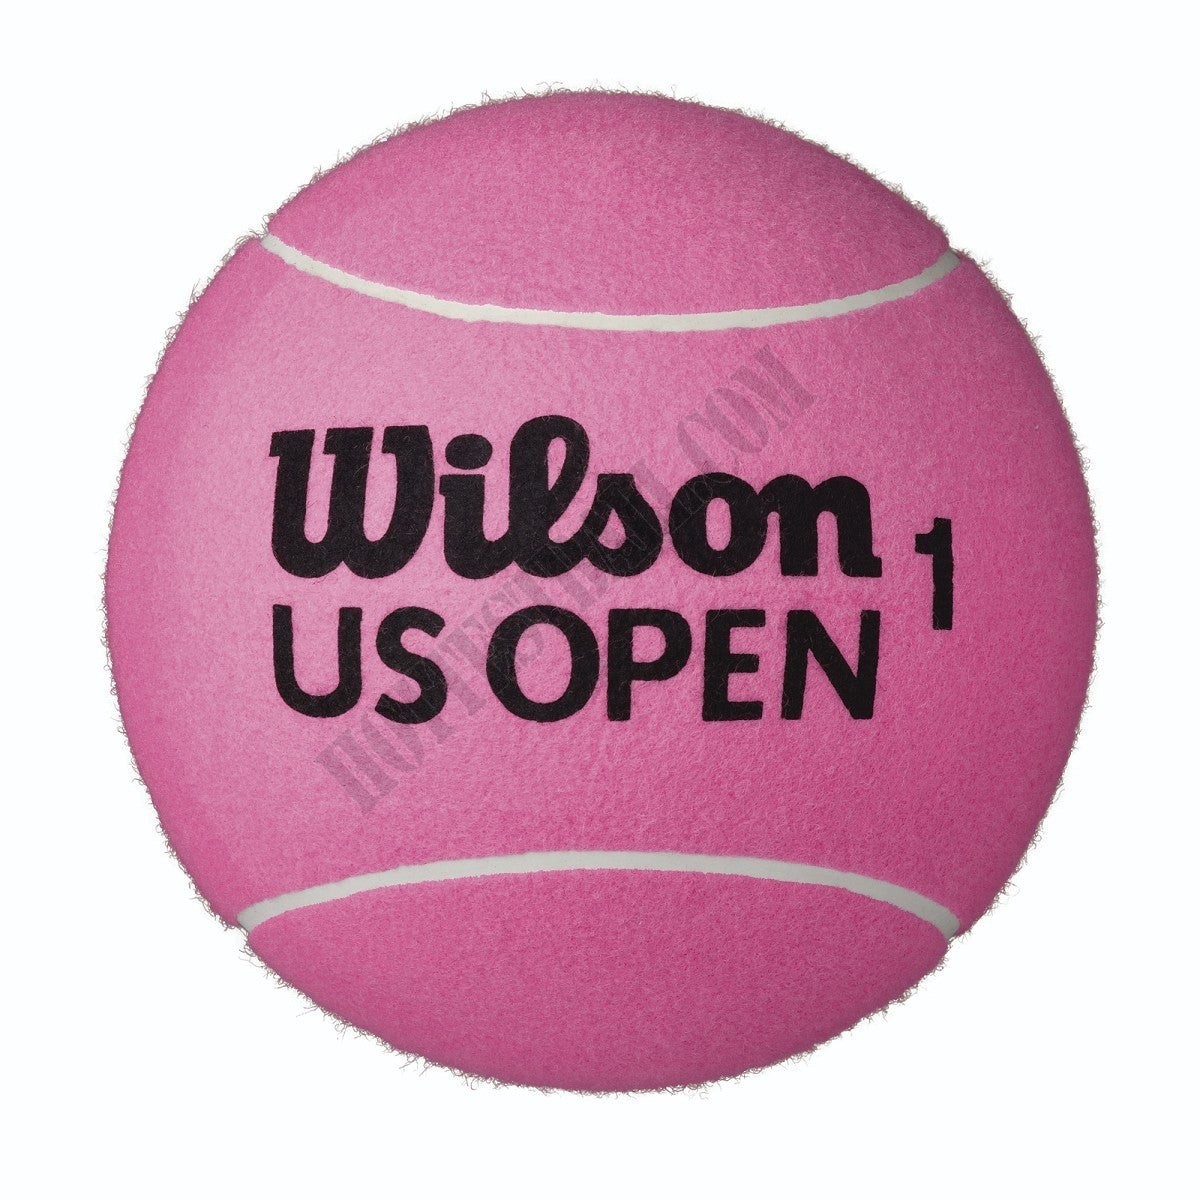 US Open Jumbo Pink 9" Tennis Ball - Wilson Discount Store - -0